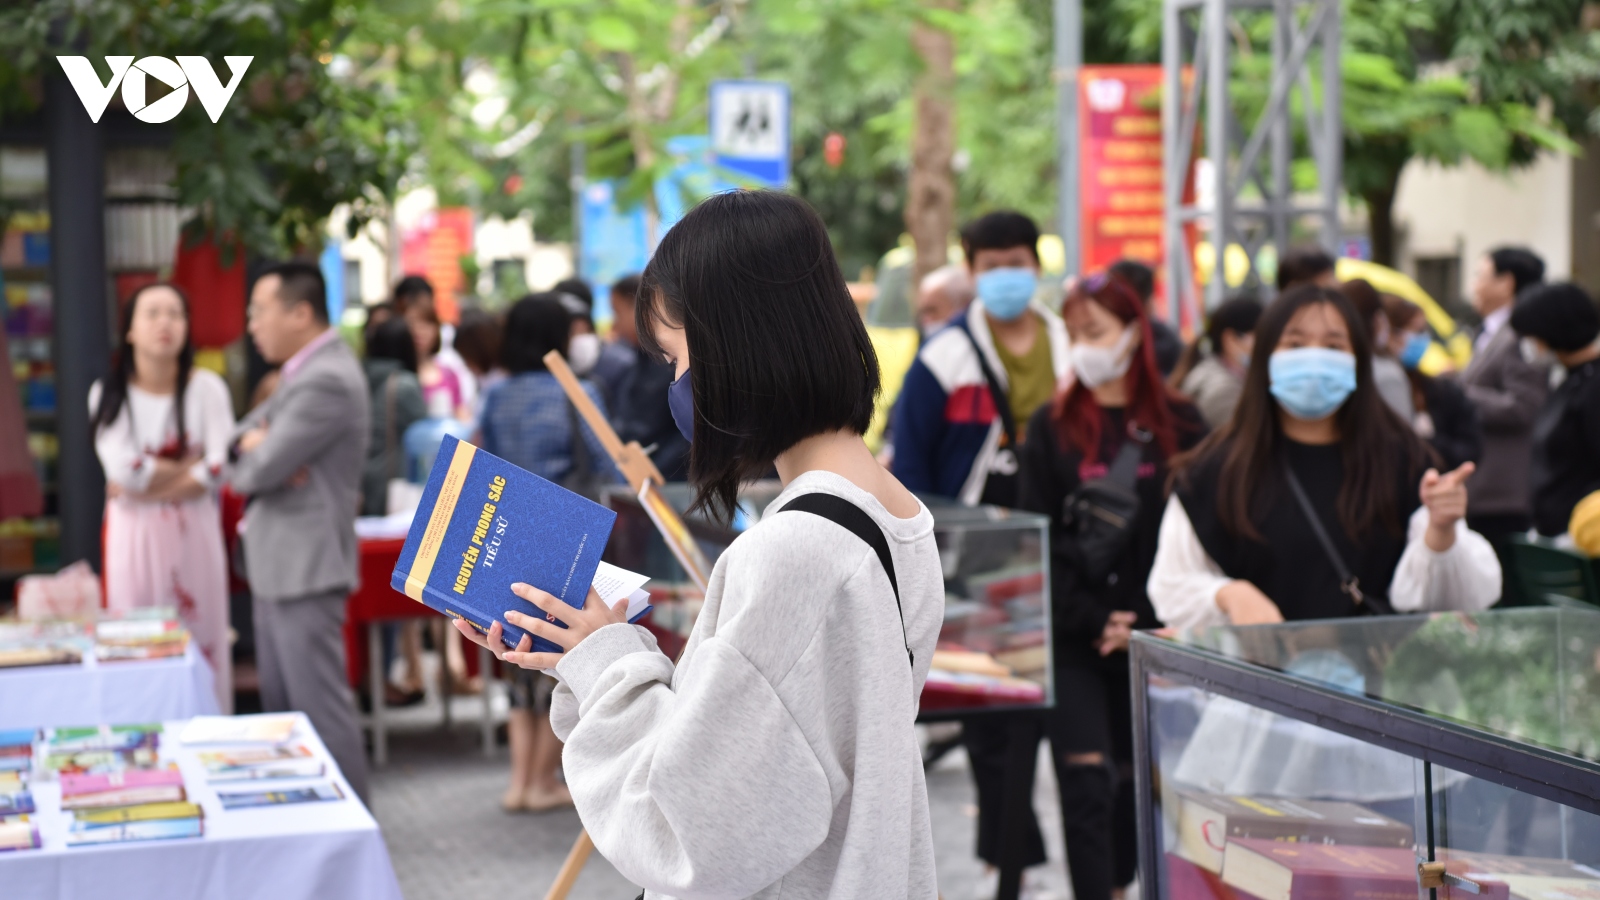 Hướng dẫn tổ chức Cuộc thi Đại sứ Văn hóa đọc cho học sinh, sinh viên trên toàn quốc